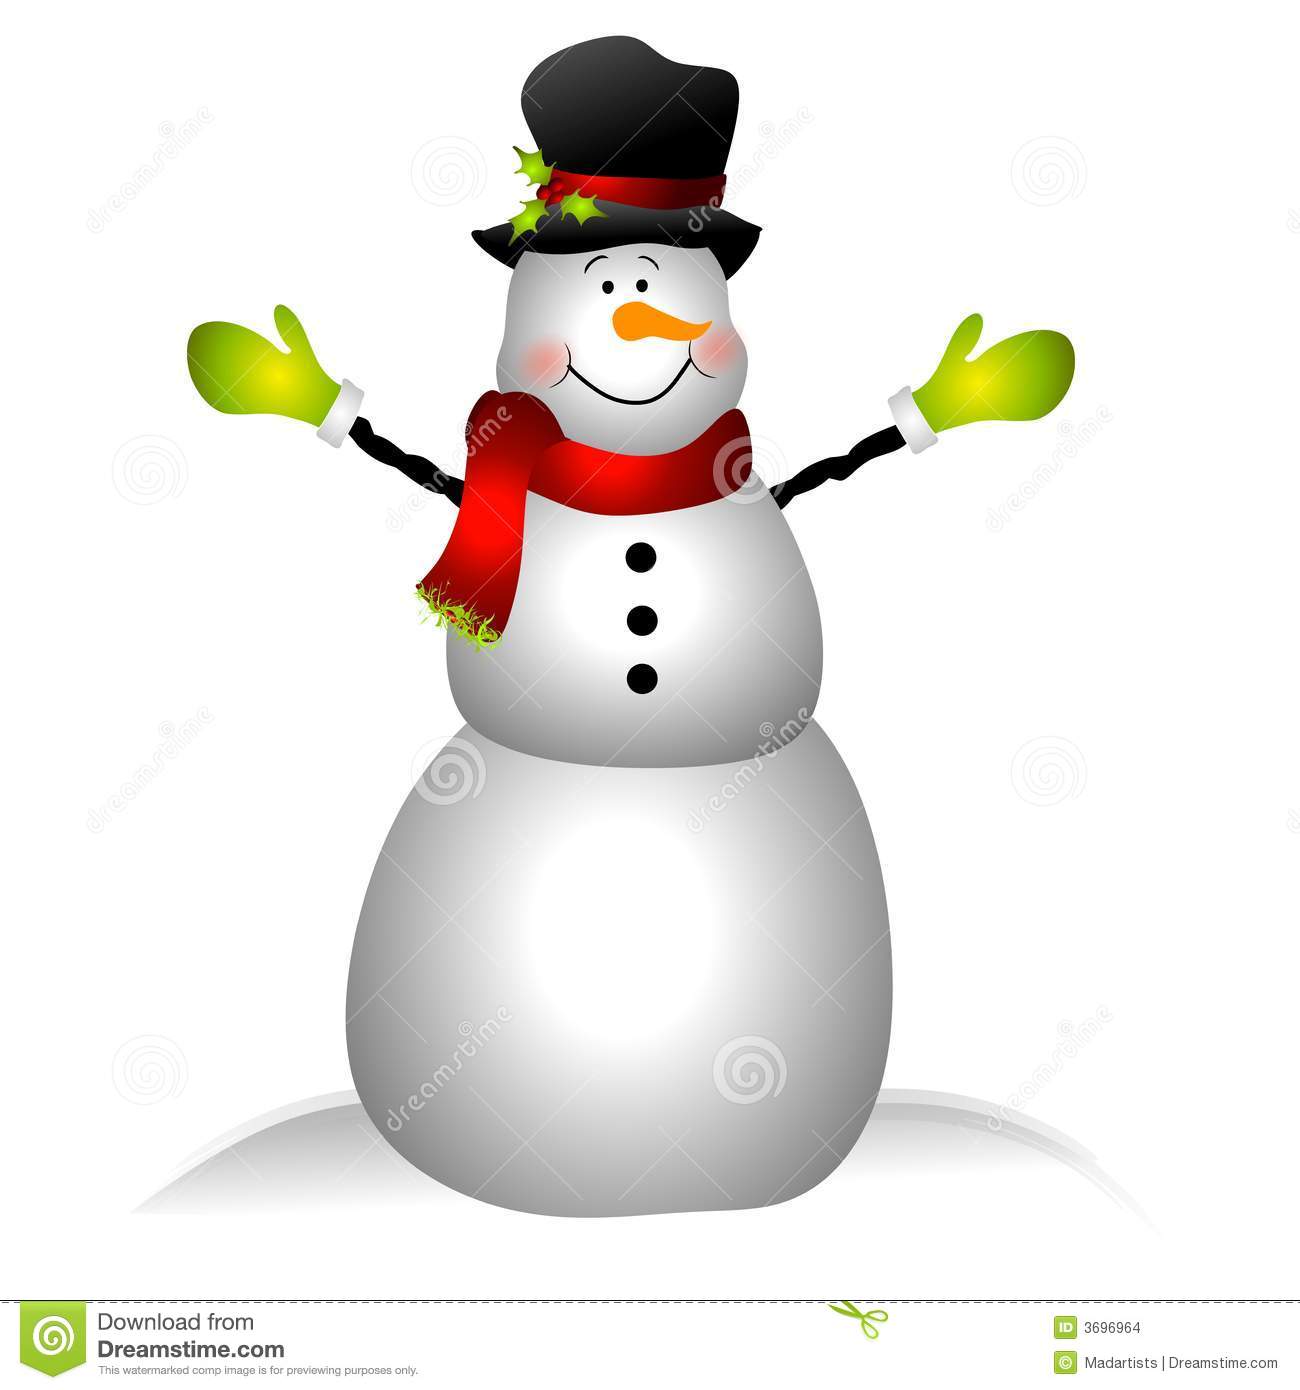 Making a snowman clip art cli